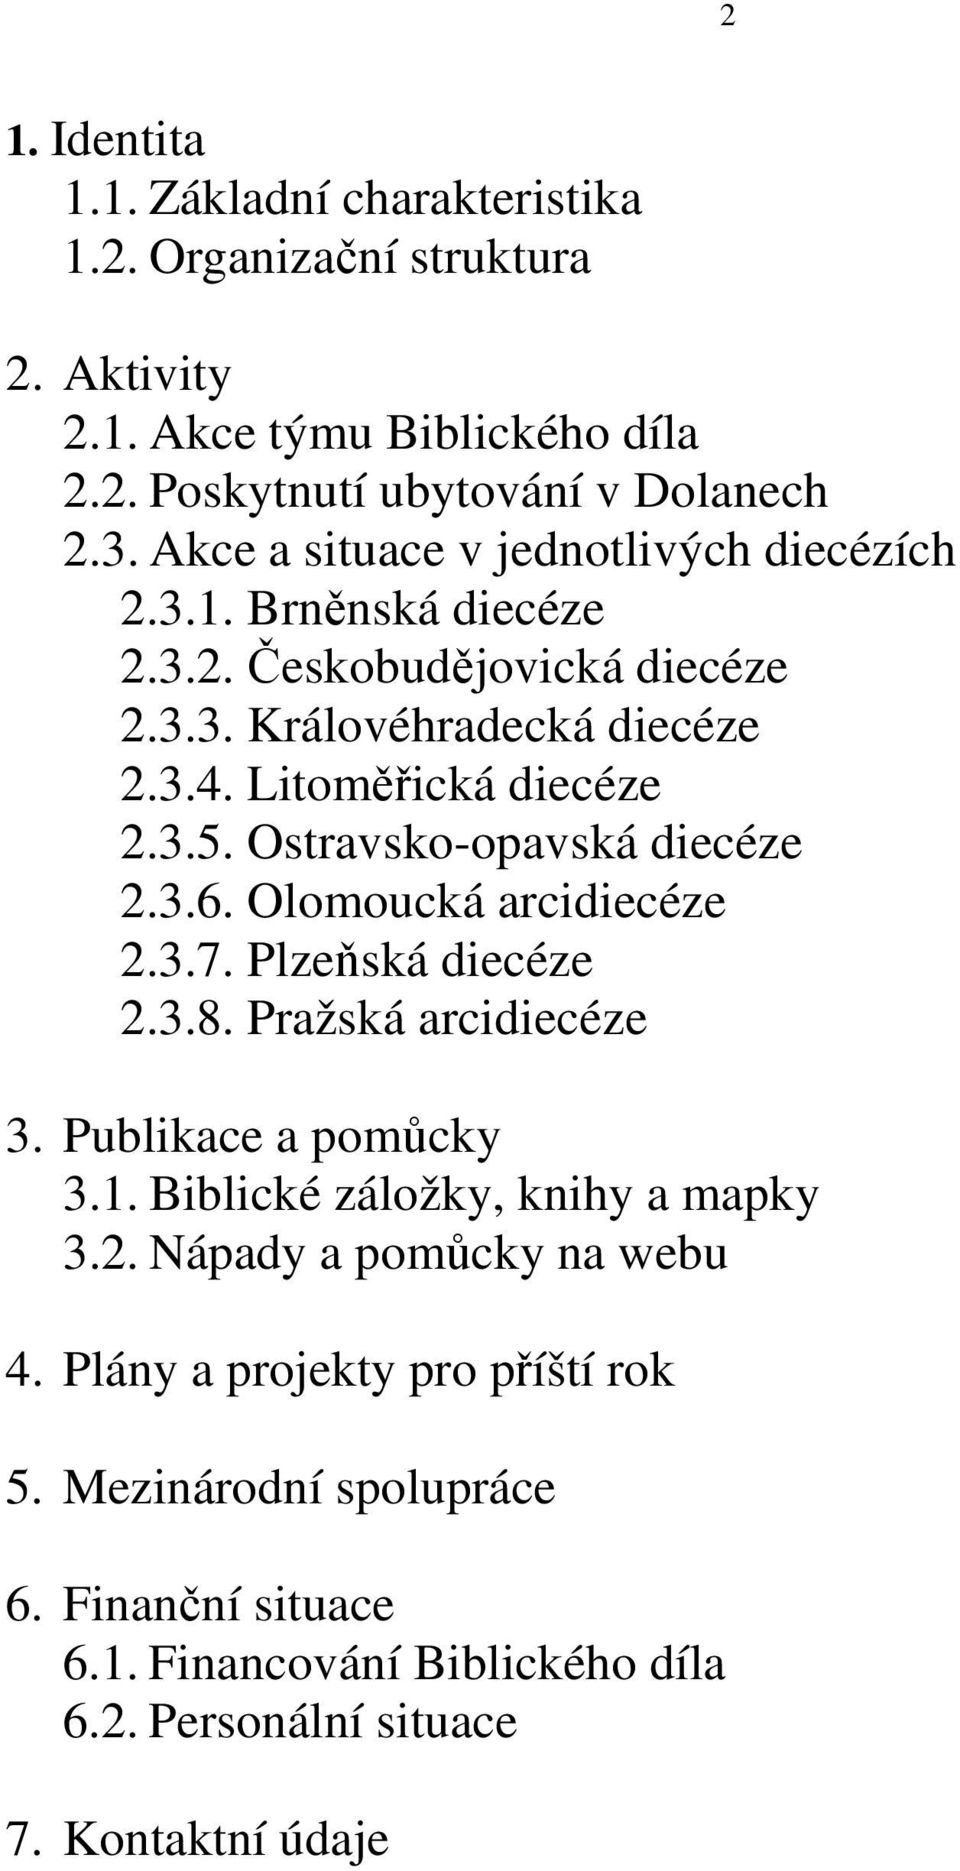 Ostravsko-opavská diecéze 2.3.6. Olomoucká arcidiecéze 2.3.7. Plzeňská diecéze 2.3.8. Pražská arcidiecéze 3. Publikace a pomůcky 3.1. Biblické záložky, knihy a mapky 3.